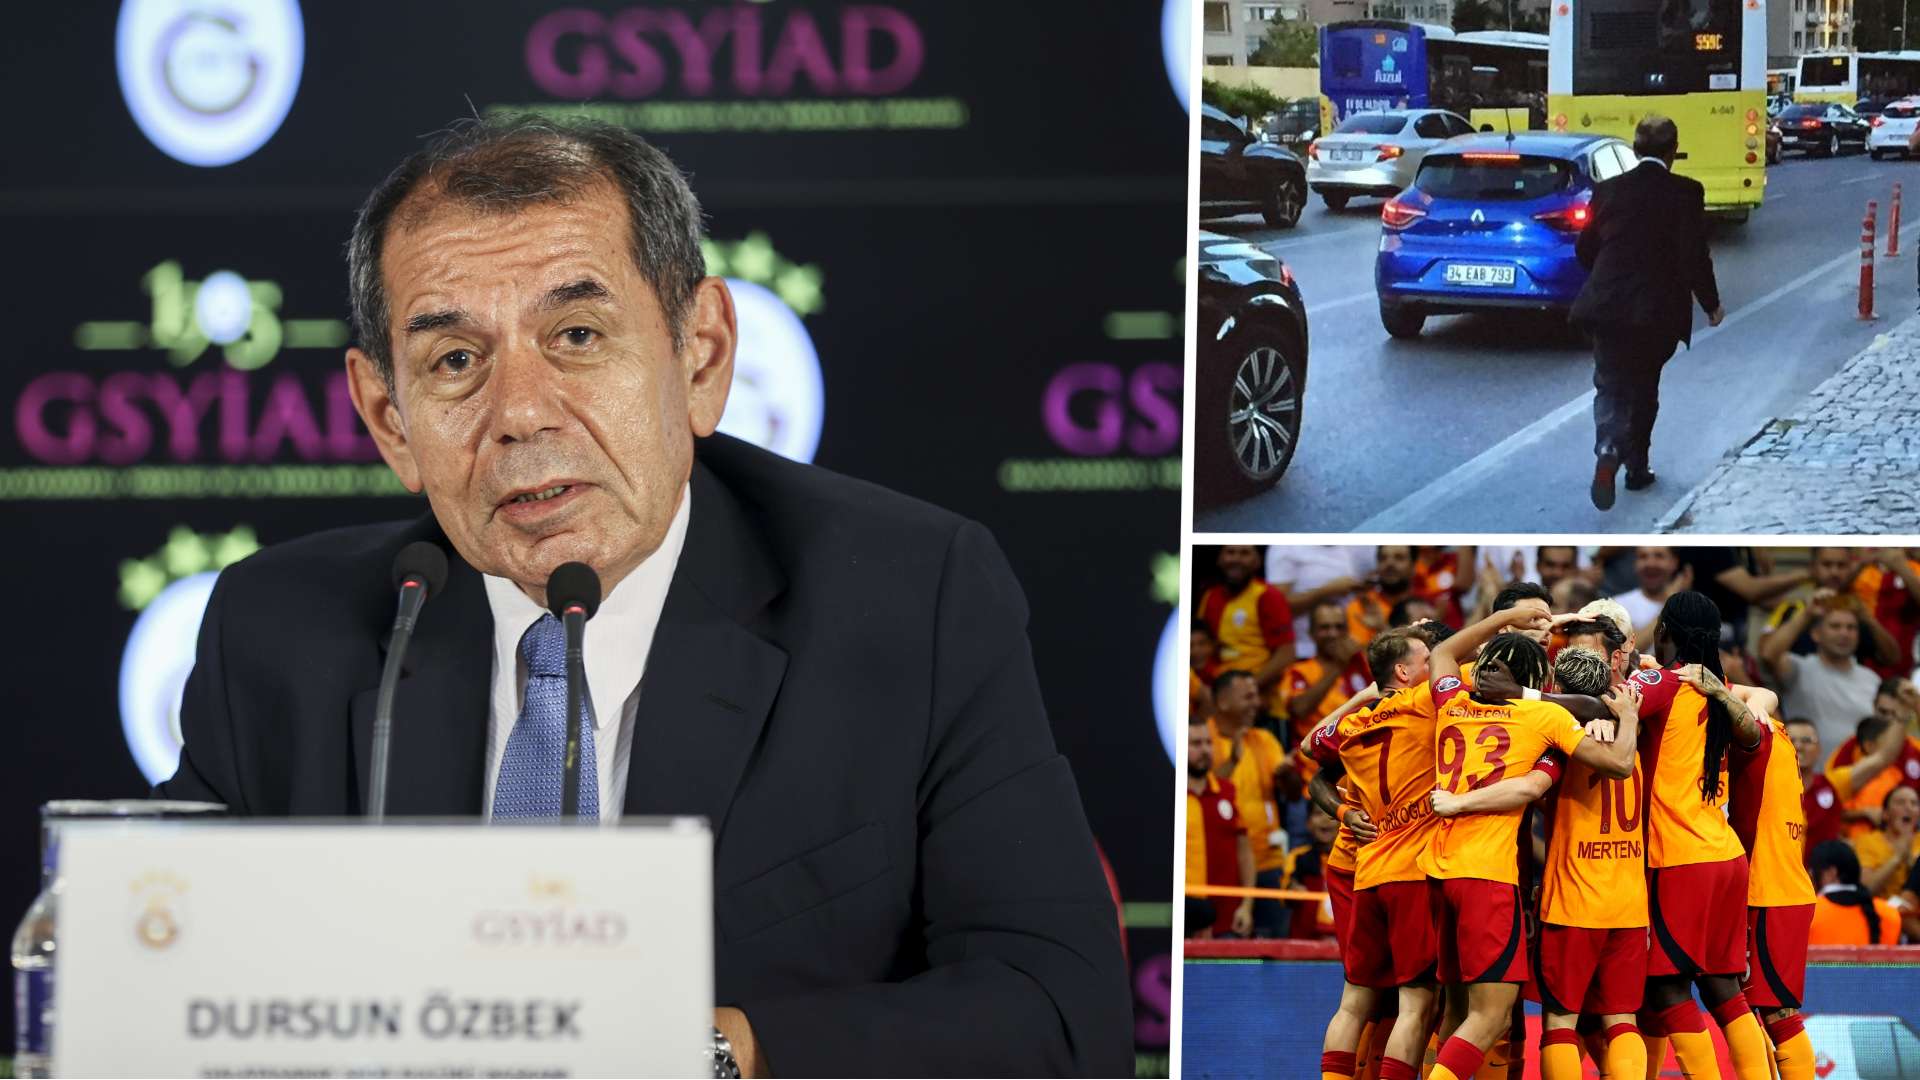 Dursun Ozbek Galatasaray President 2022